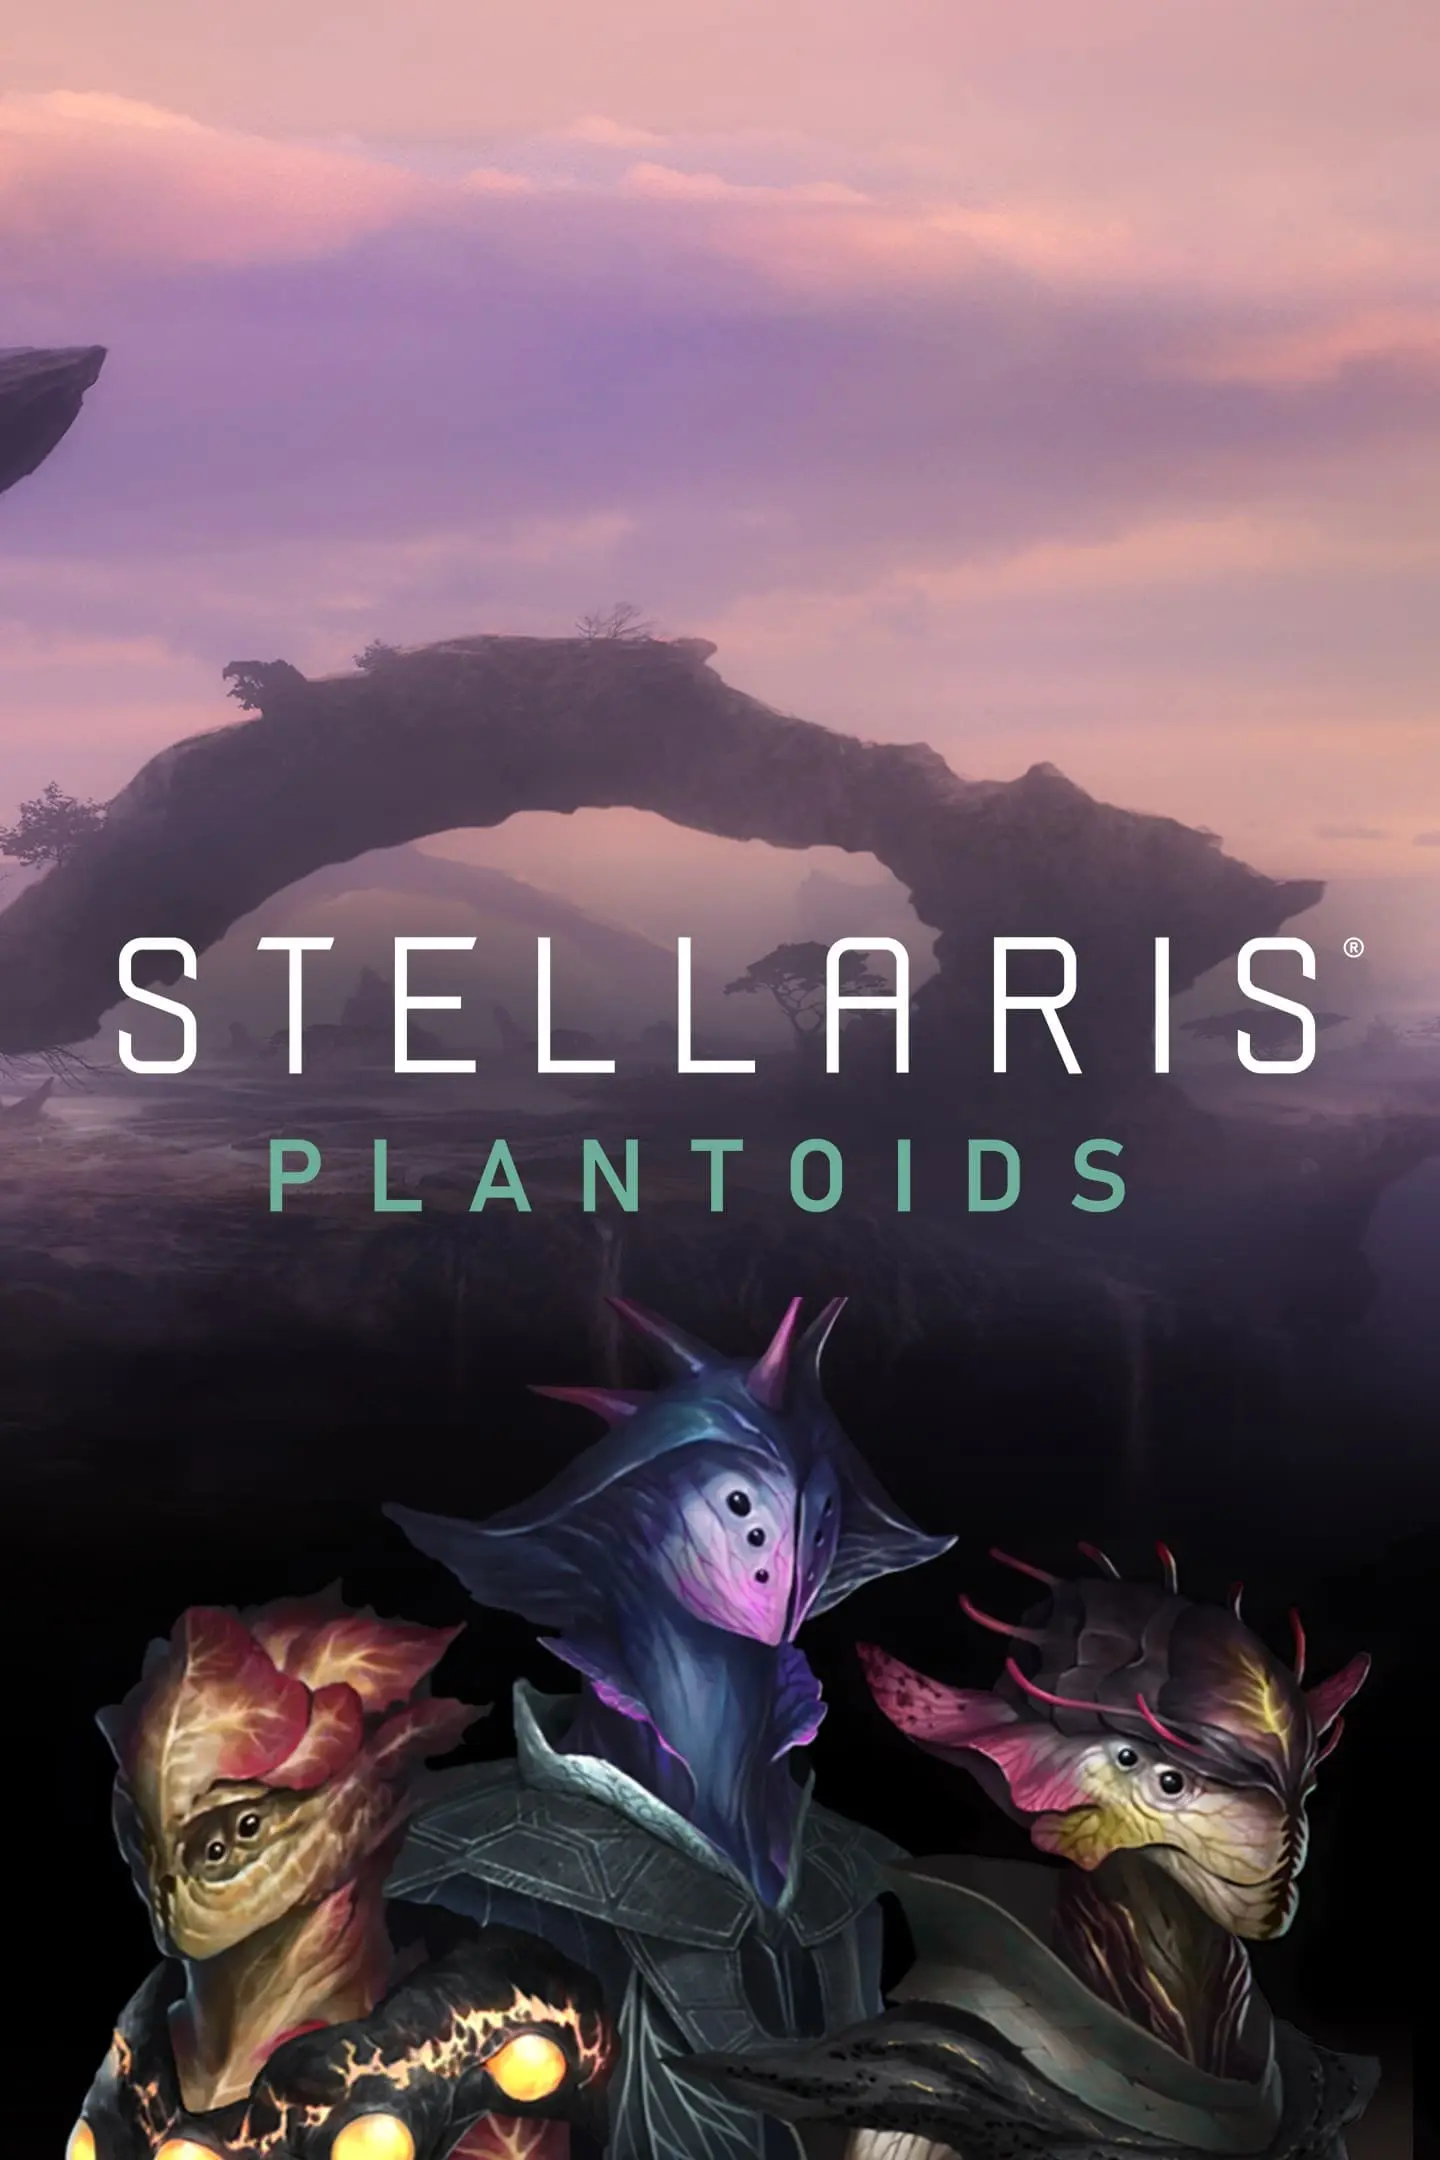 Stellaris: Plantoids Species Pack DLC (PC / Mac / Linux) - Steam - Digital Code